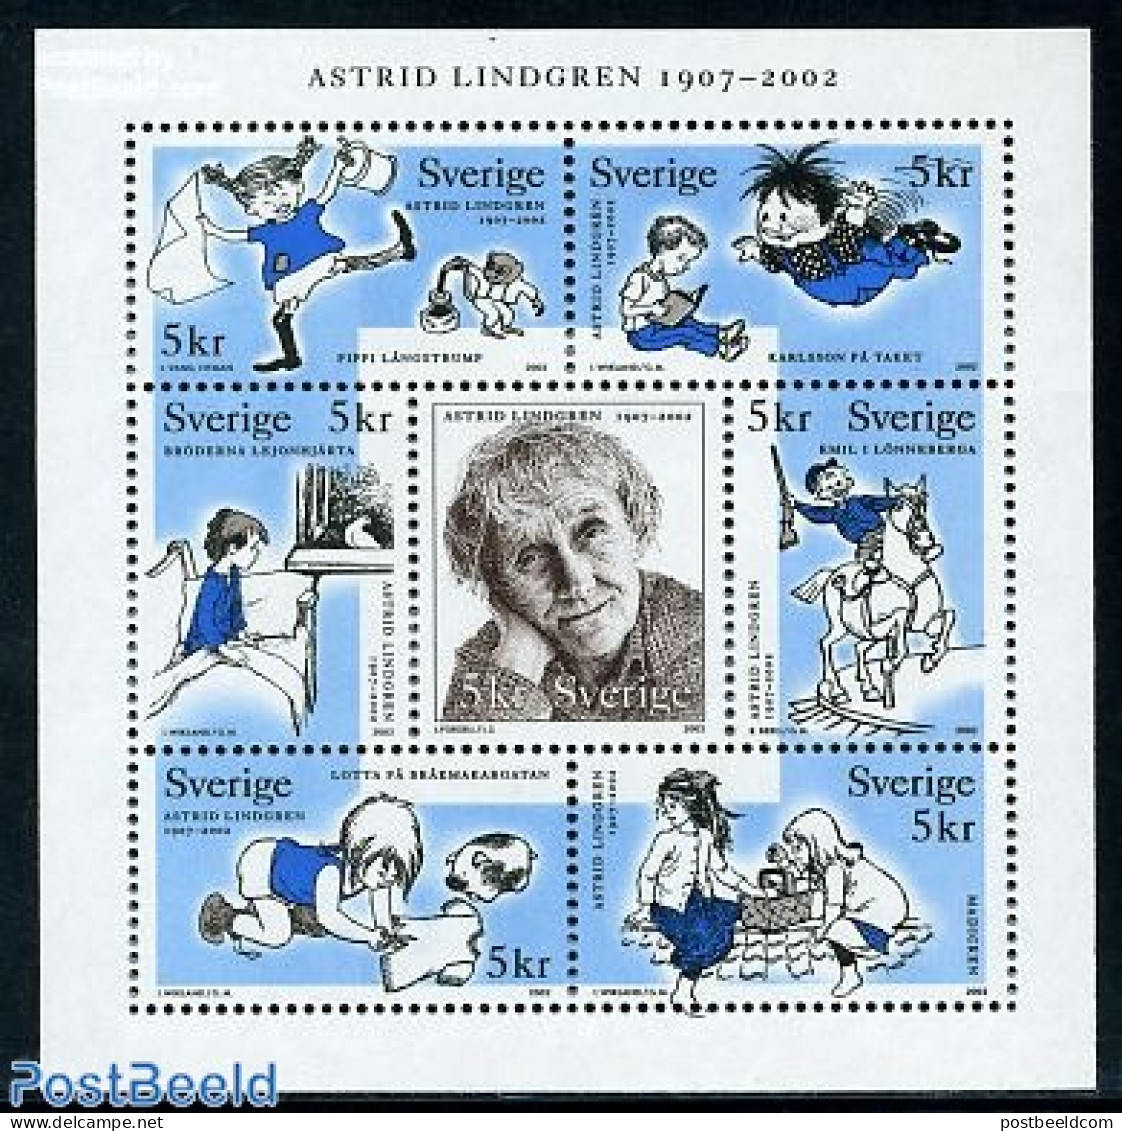 Sweden 2002 Astrid Lindgren 7v M/s, Mint NH, Art - Children's Books Illustrations - Ungebraucht